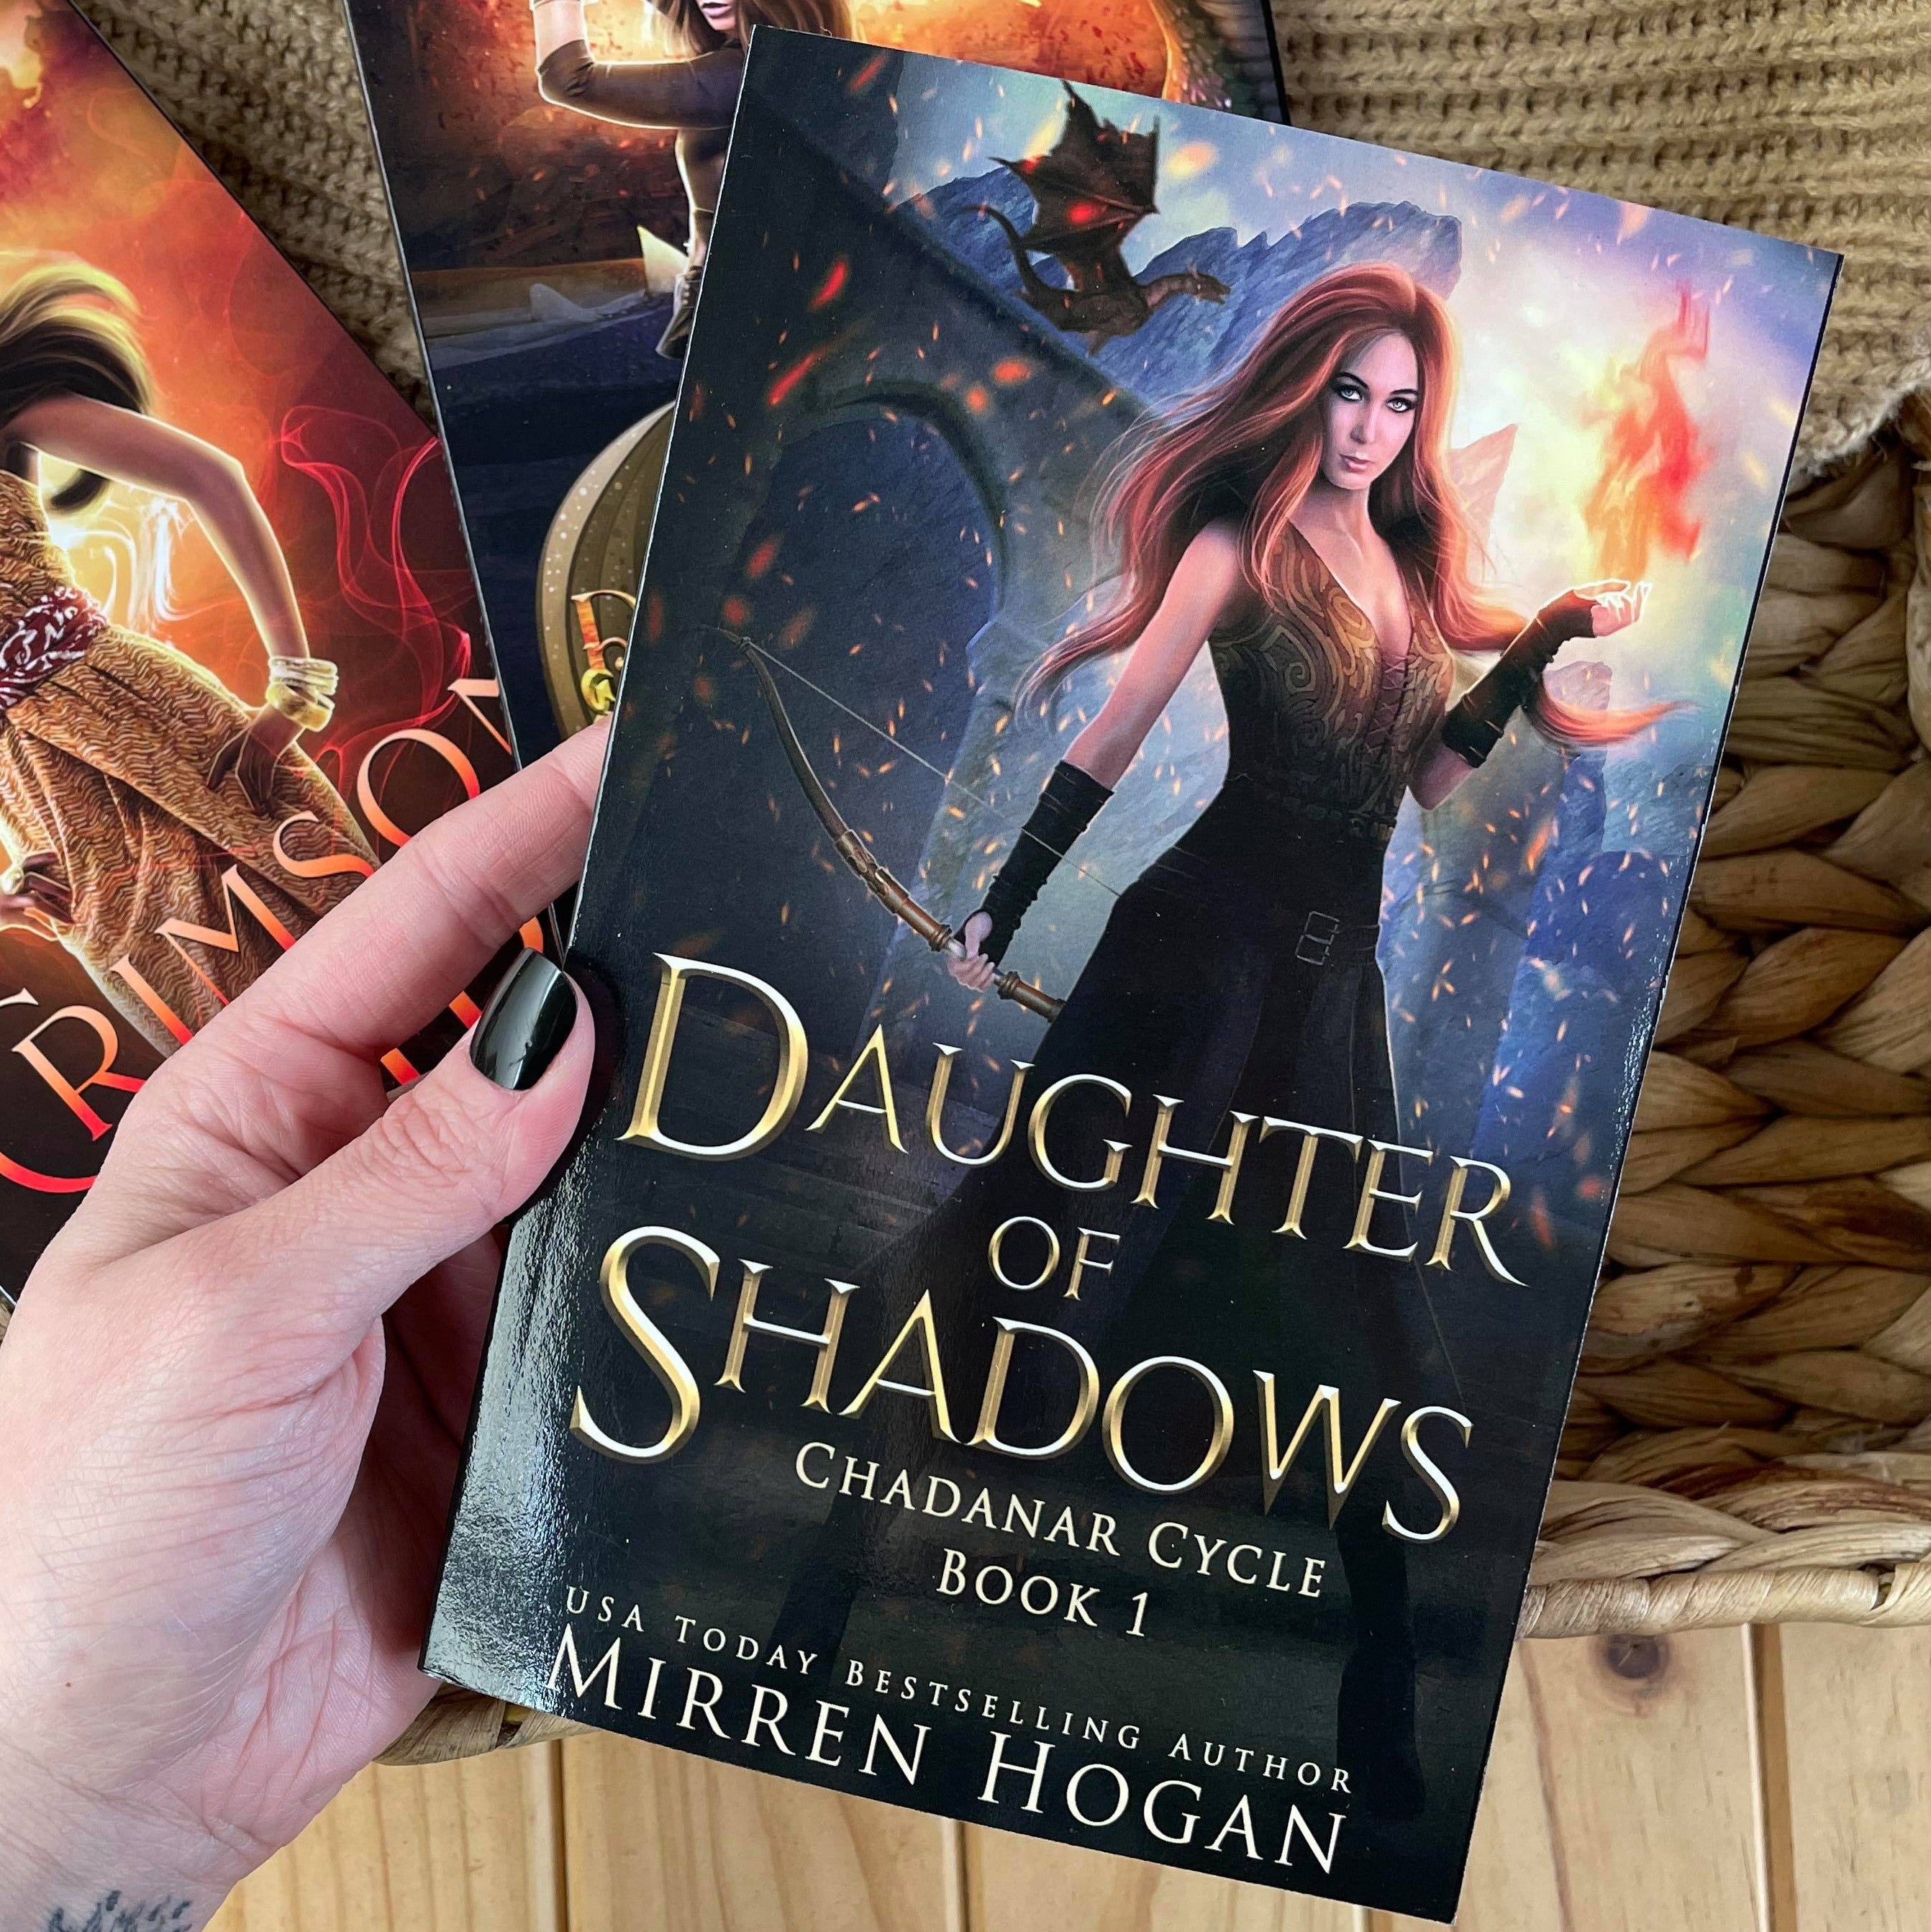 Daughter of Shadows by Mirren Hogan